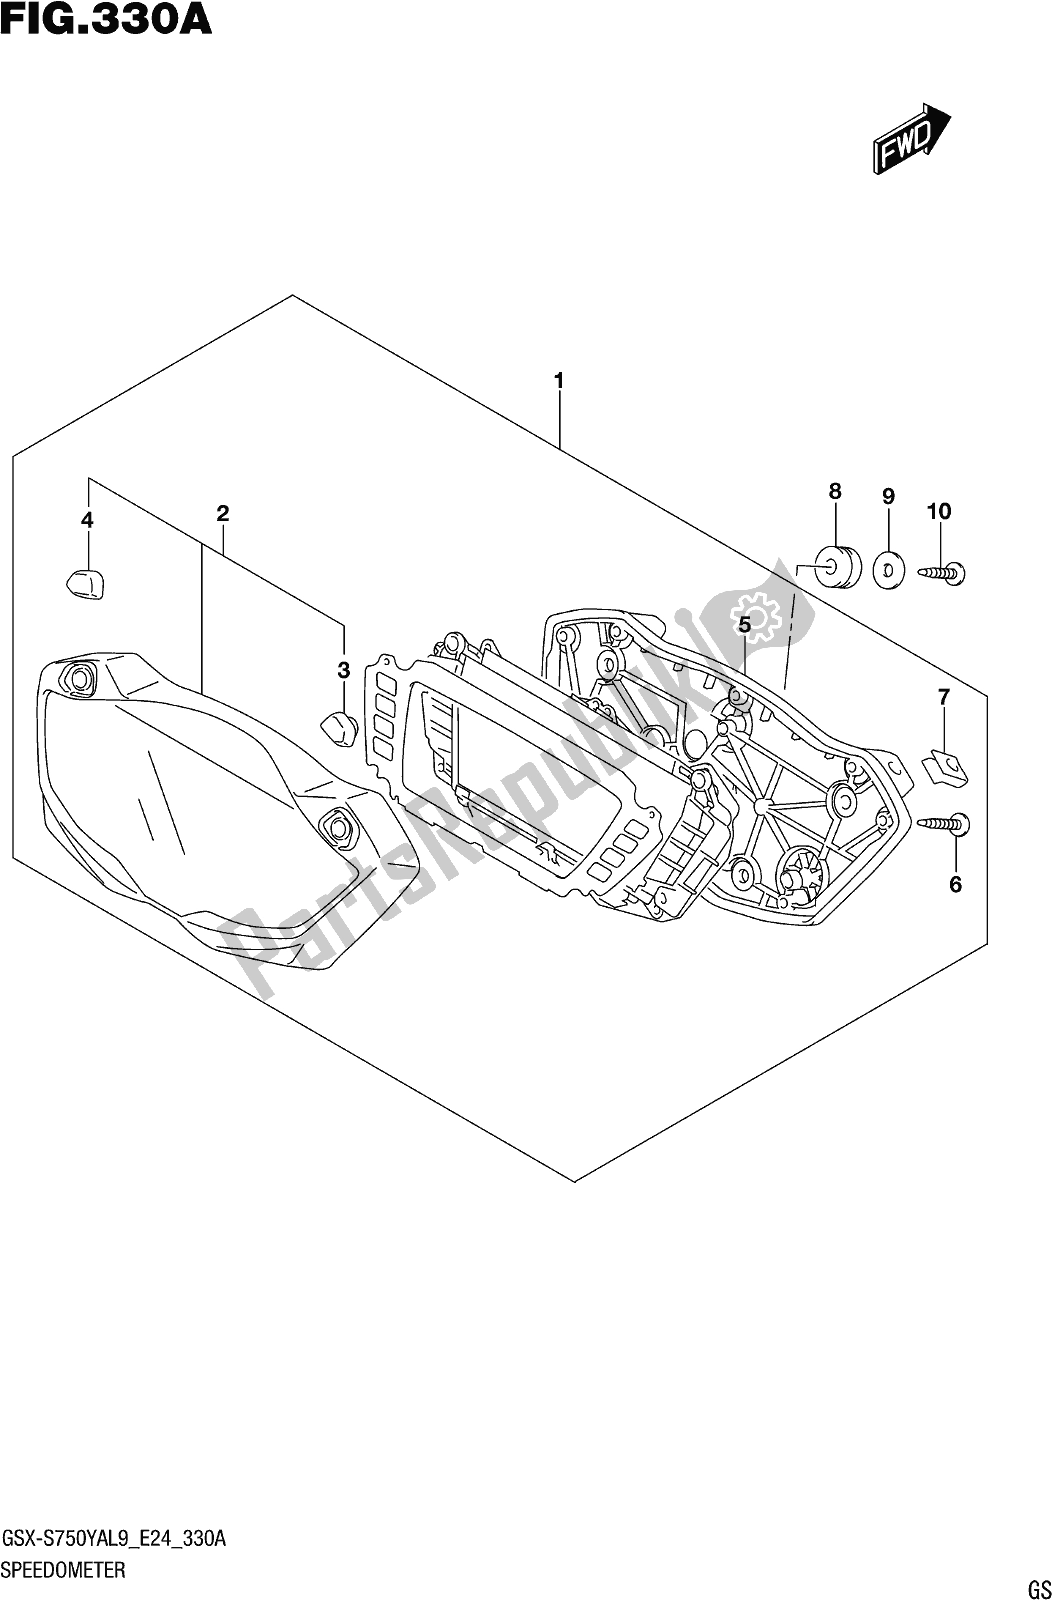 Alle onderdelen voor de Fig. 330a Speedometer van de Suzuki Gsx-s 750 YA 2019